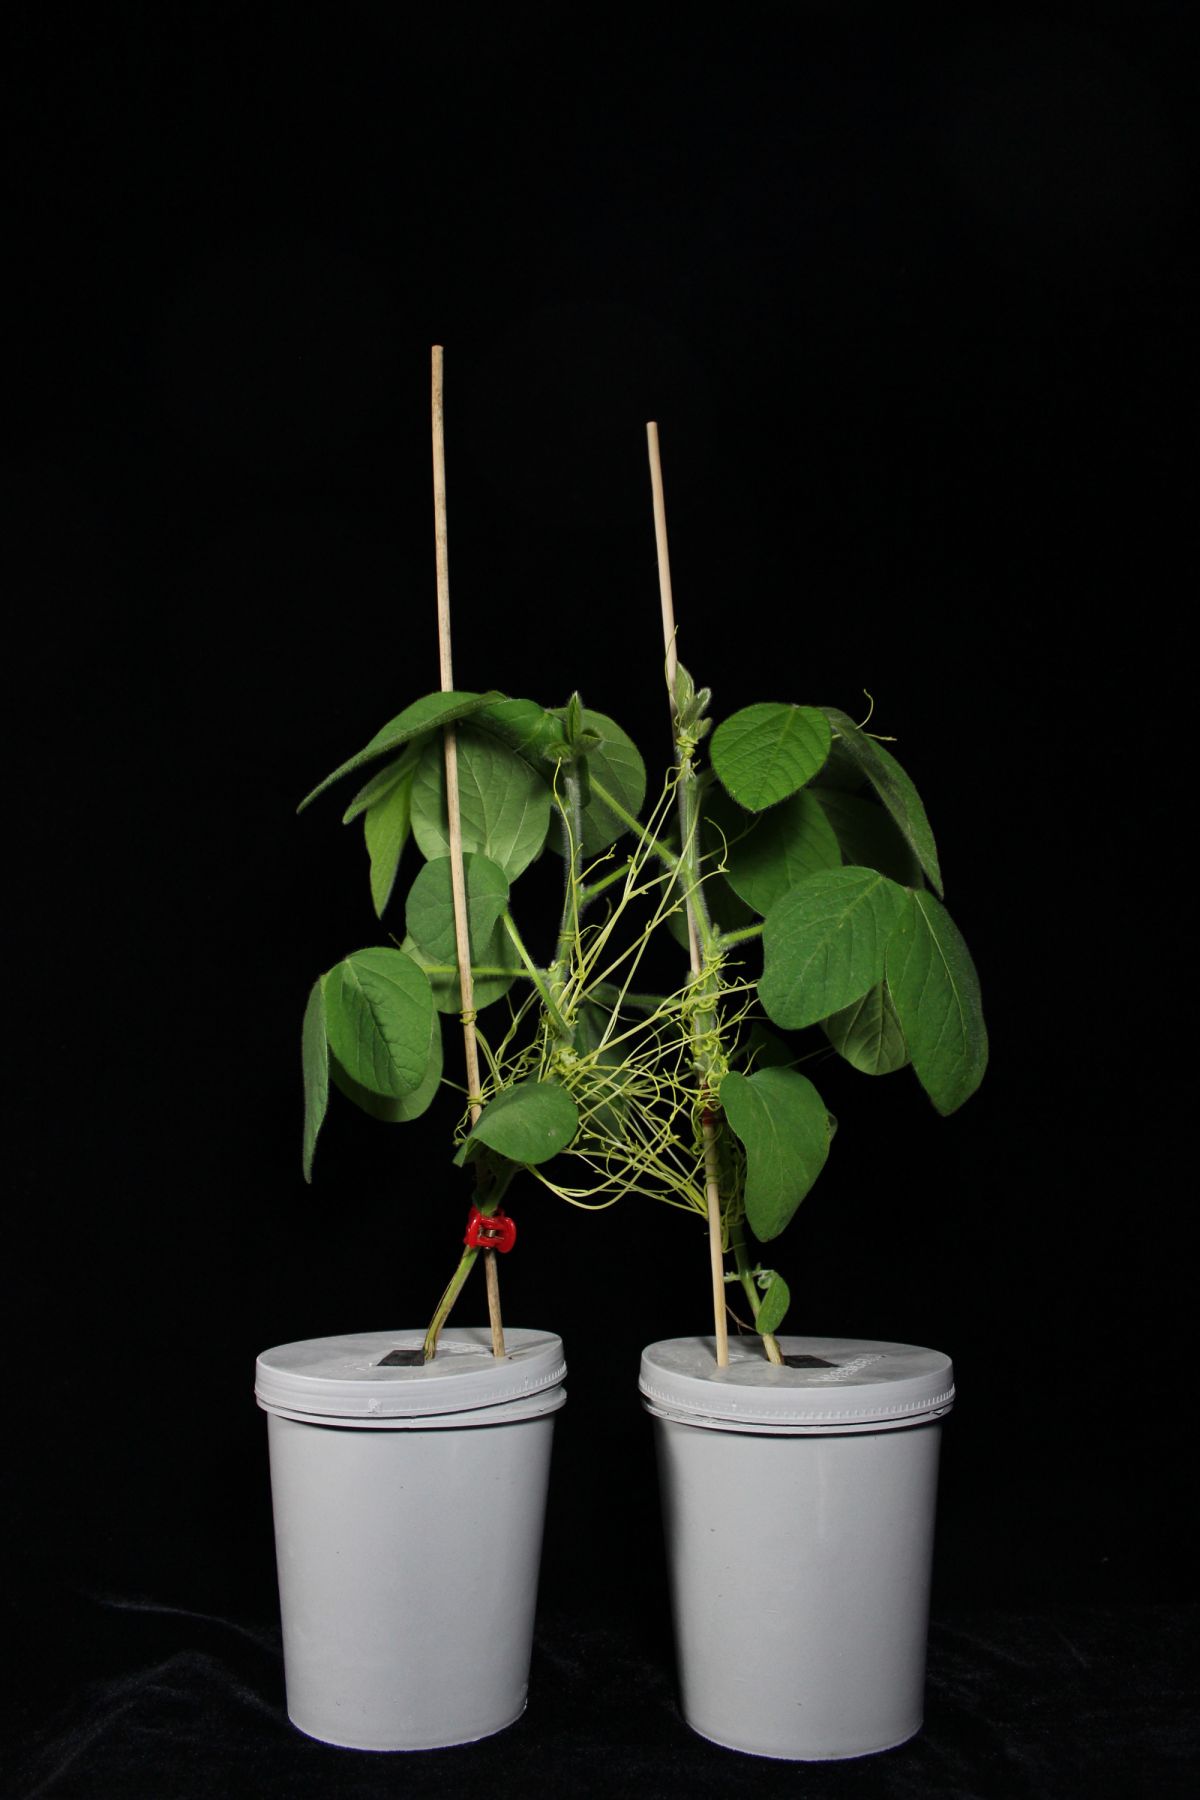 Der Parasit Cuscuta australis verbindet hier zwei Sojapflanzen miteinander.